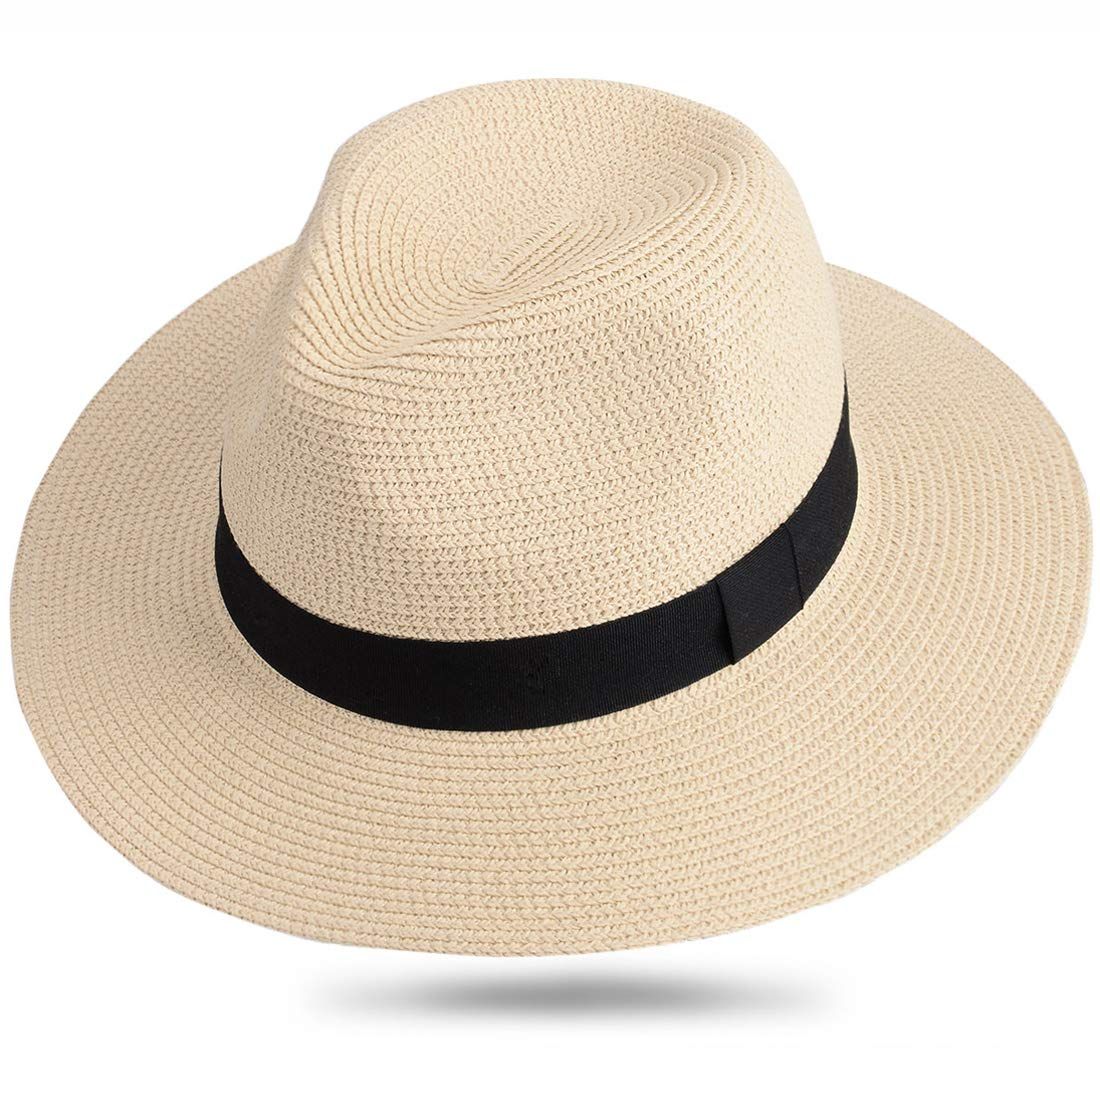 Cornualles empeorar buffet Sombreros de verano para hombre - Todos los tipos y usos